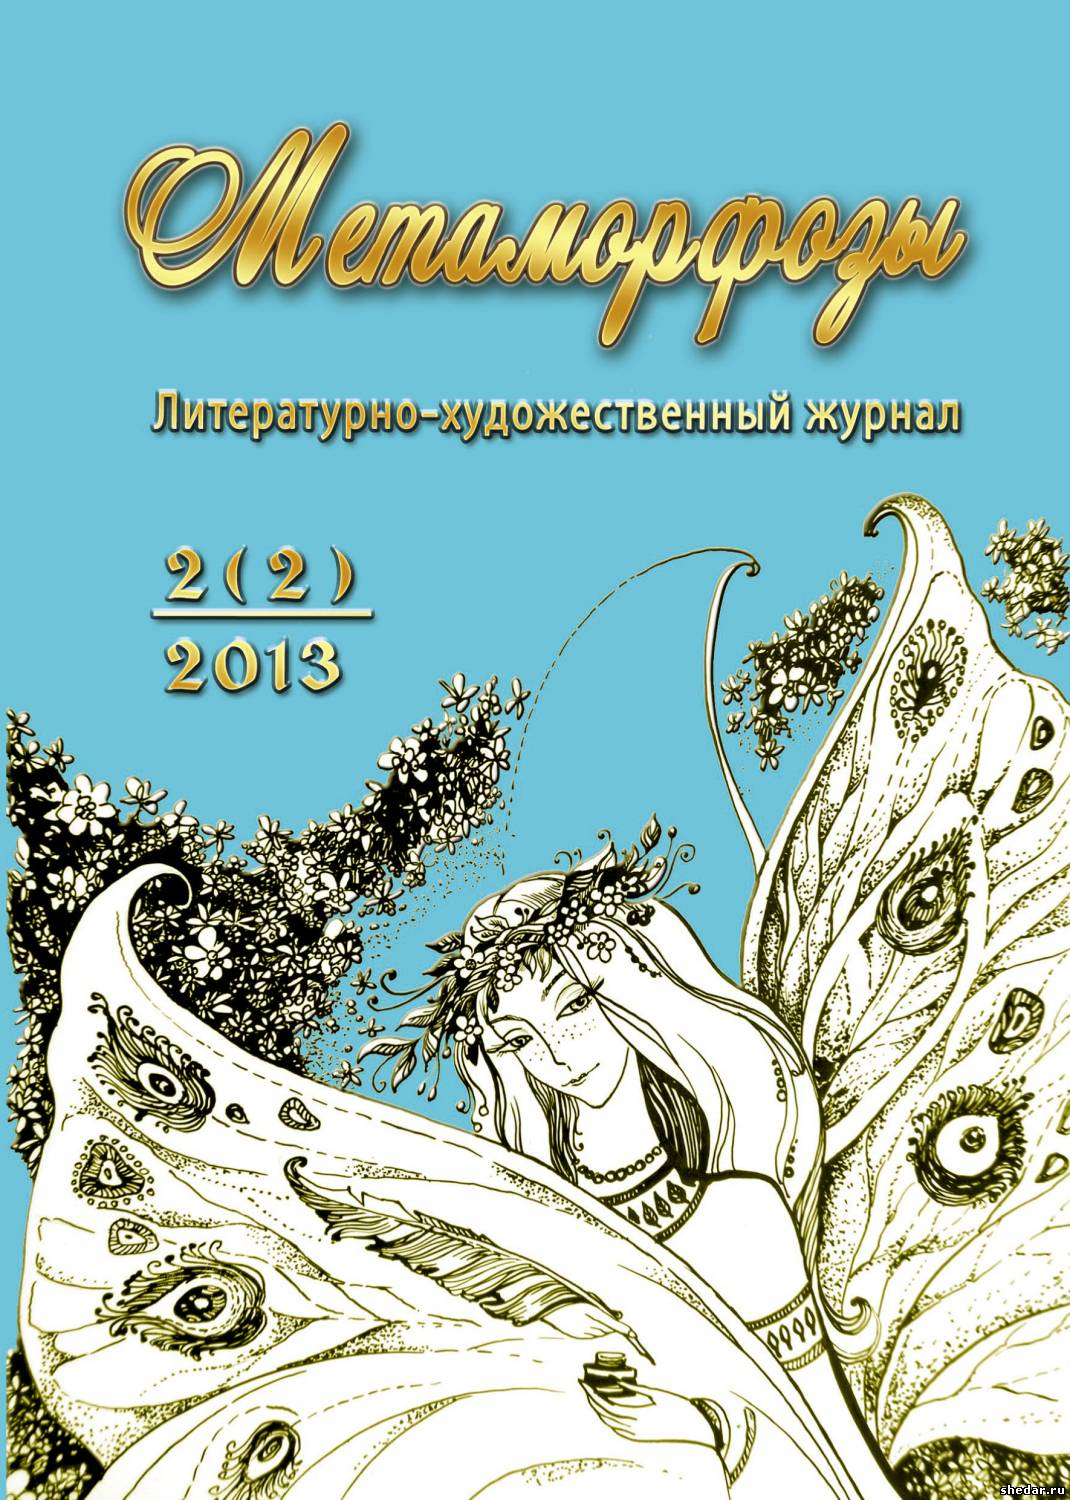 Второй выпуск журнала в Беларуси.